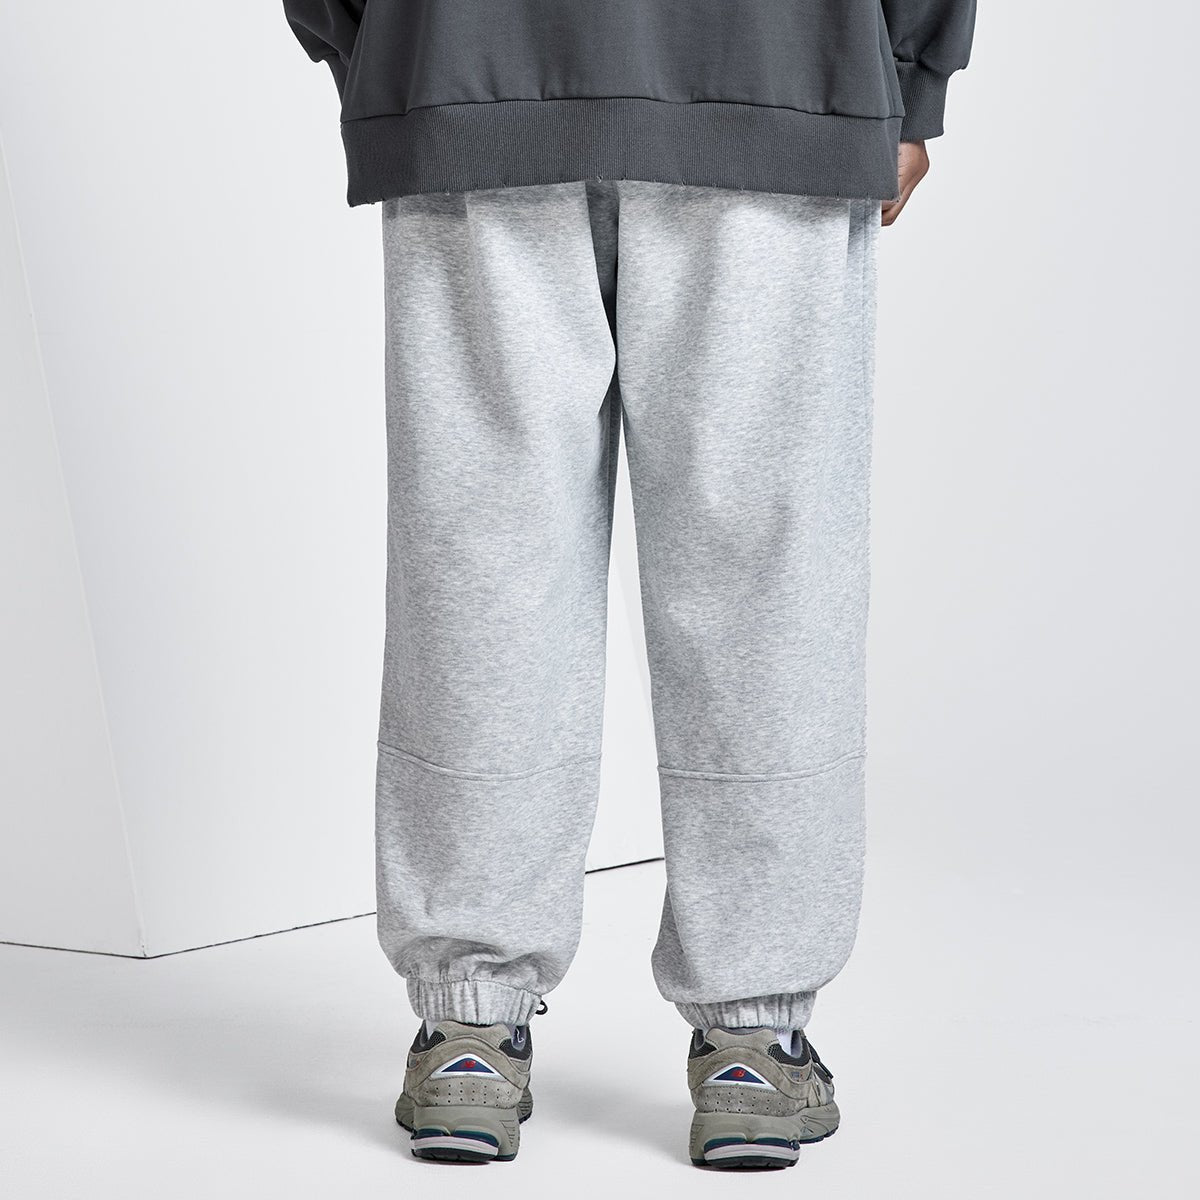 Downtown Comfort Fit Grey Sweatpants - 0cm